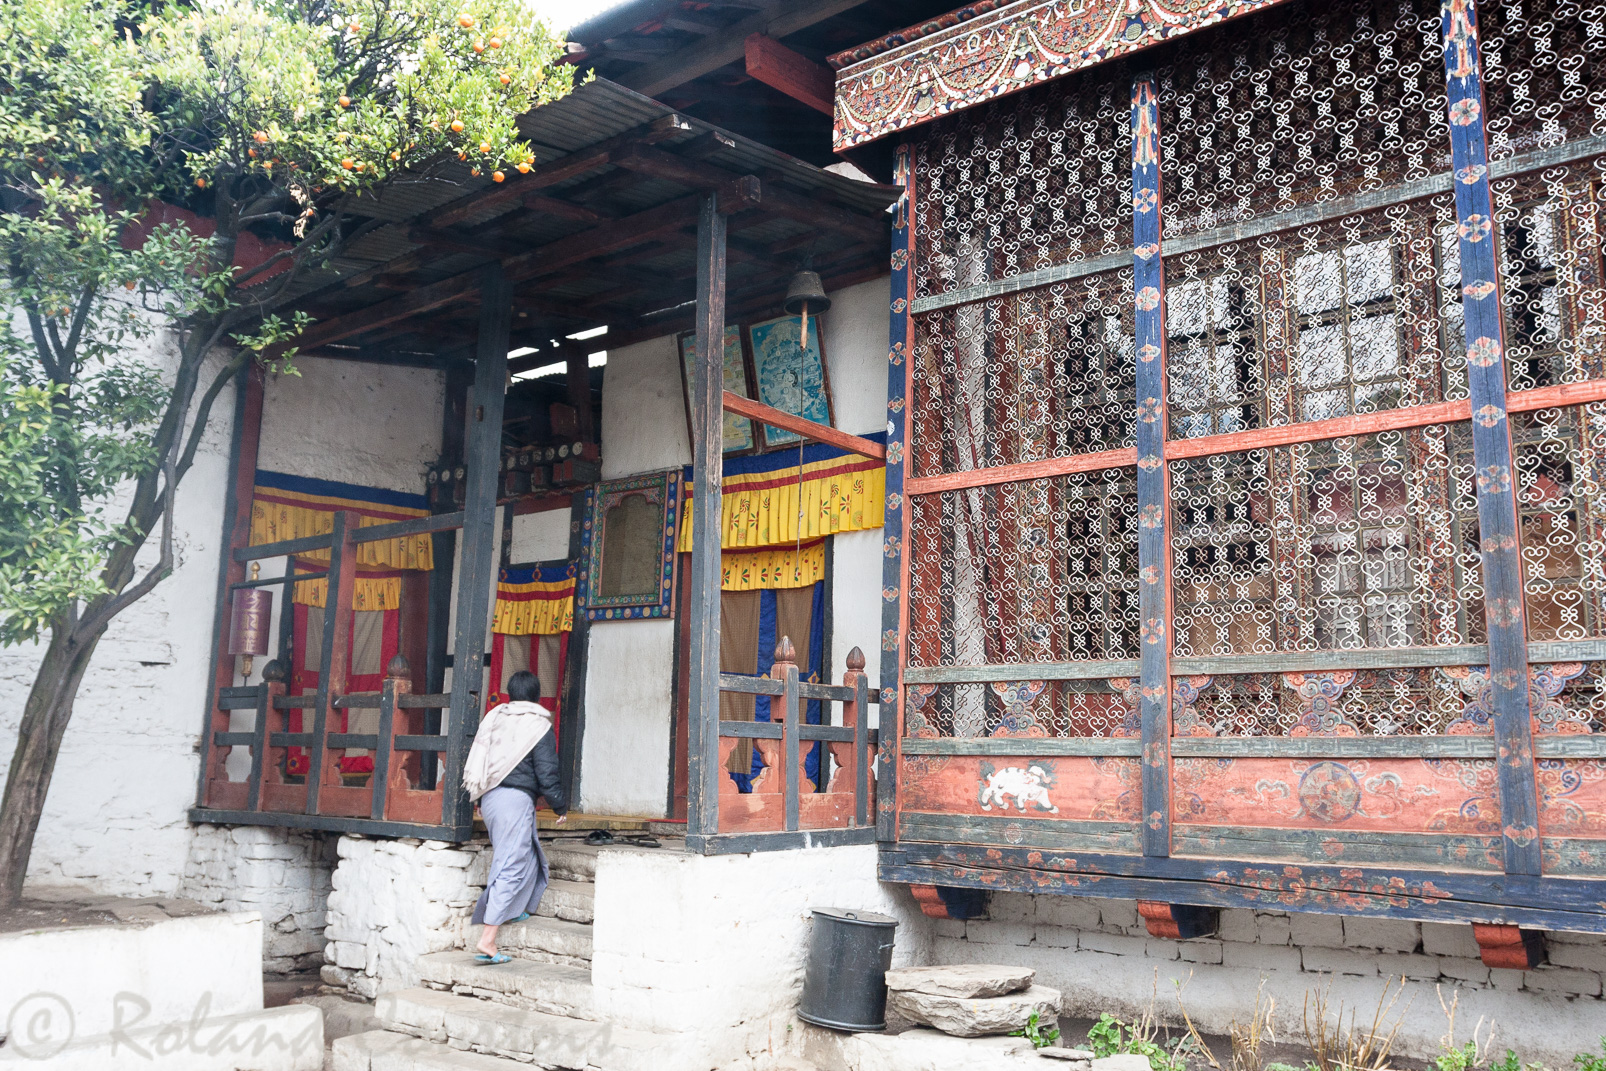 Temples jumeaux de Kyichu Lhakhang. Un
Ce temple ancien date du 7ème siècle et est très vénéré.